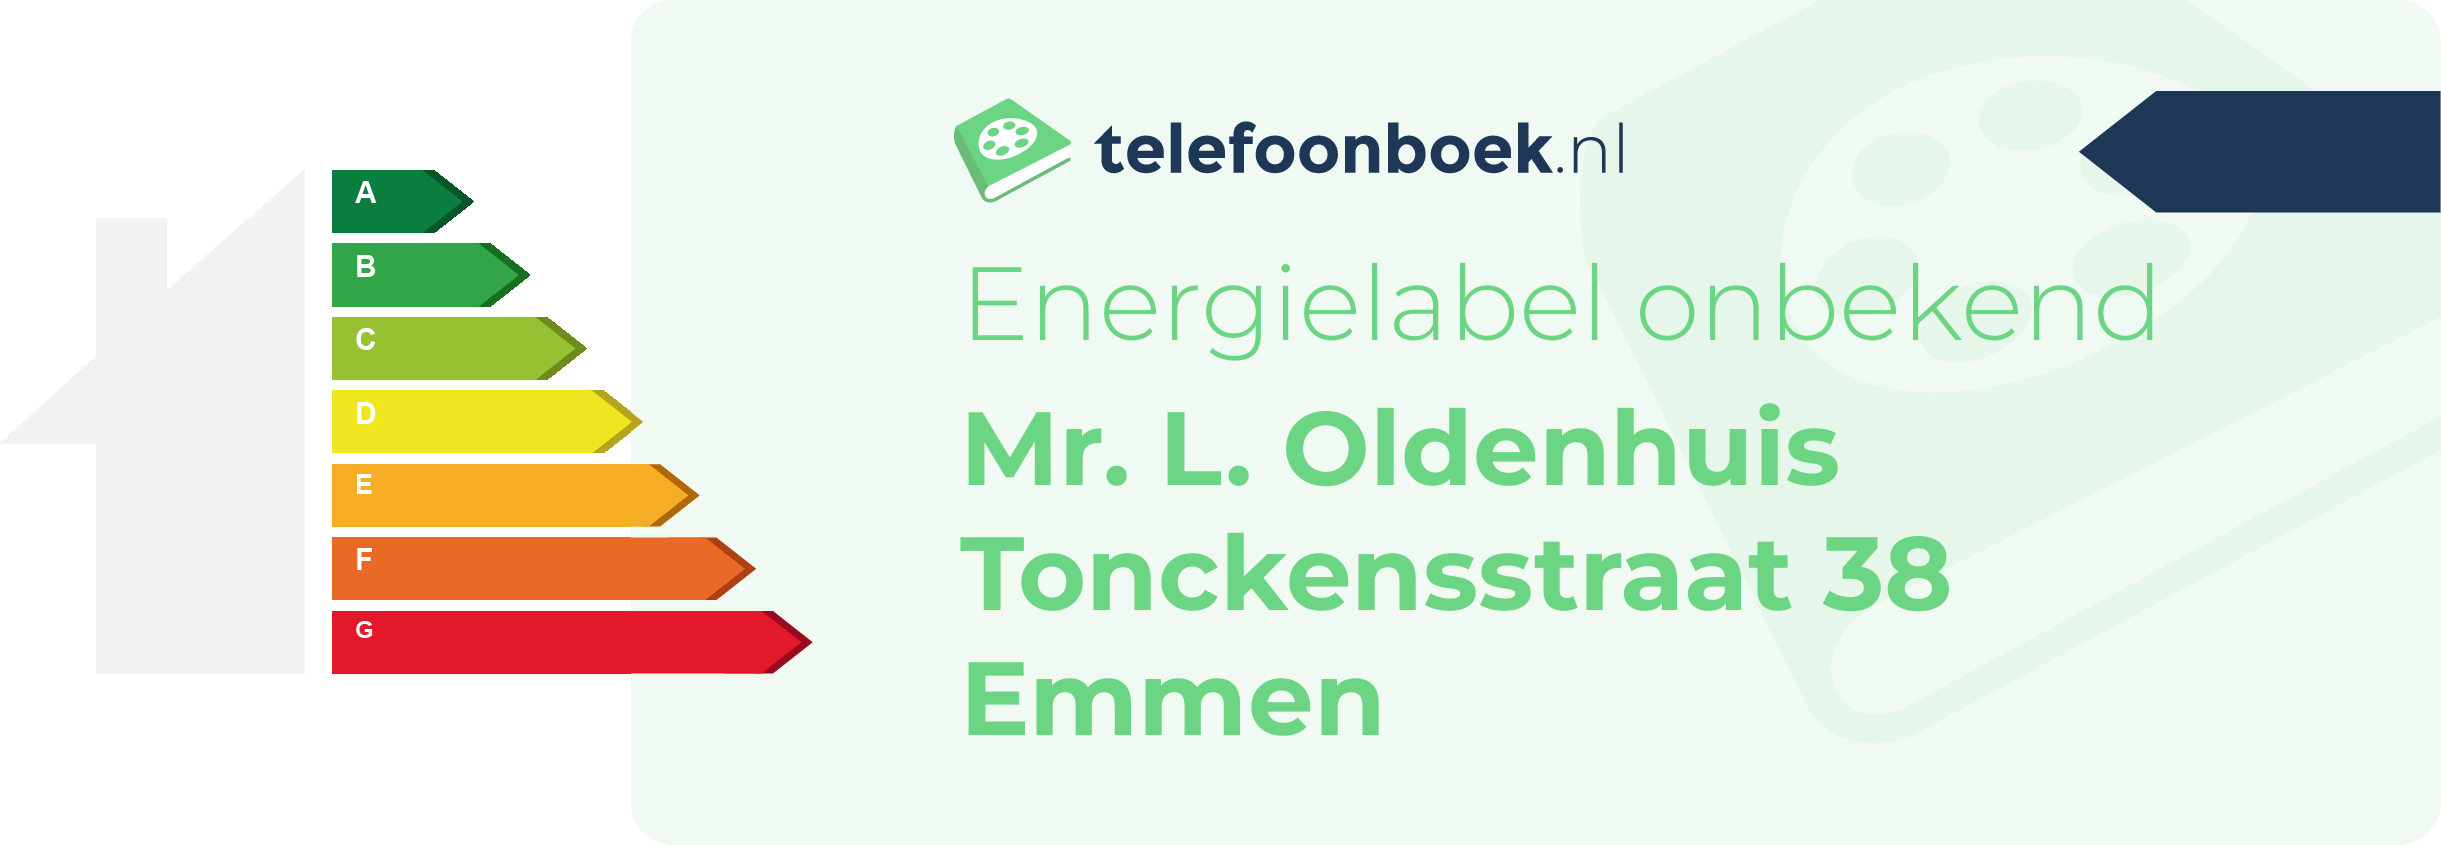 Energielabel Mr. L. Oldenhuis Tonckensstraat 38 Emmen